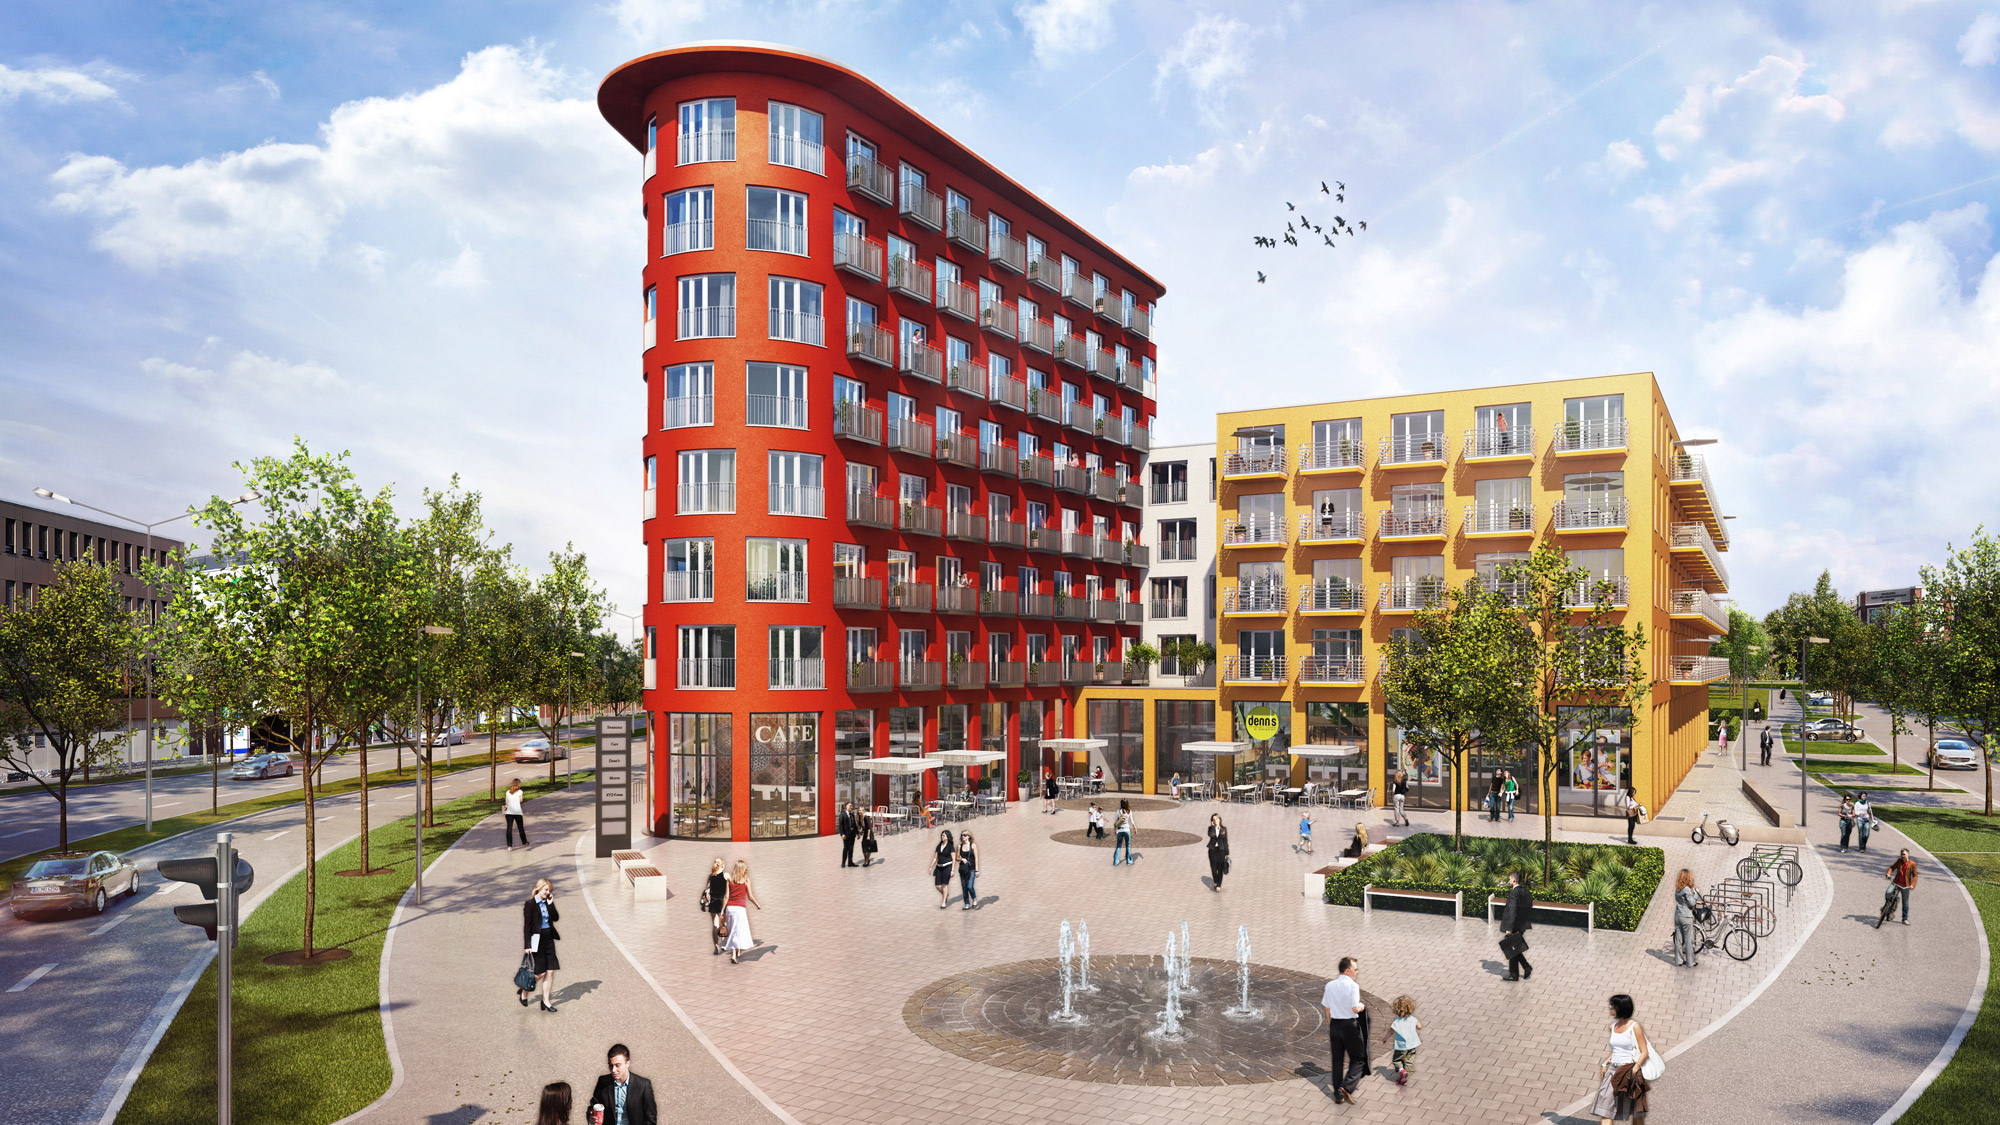 Frontansicht des studiosus 5 Apartmenthauses in Augsburg mit modernen Studentenwohnungen